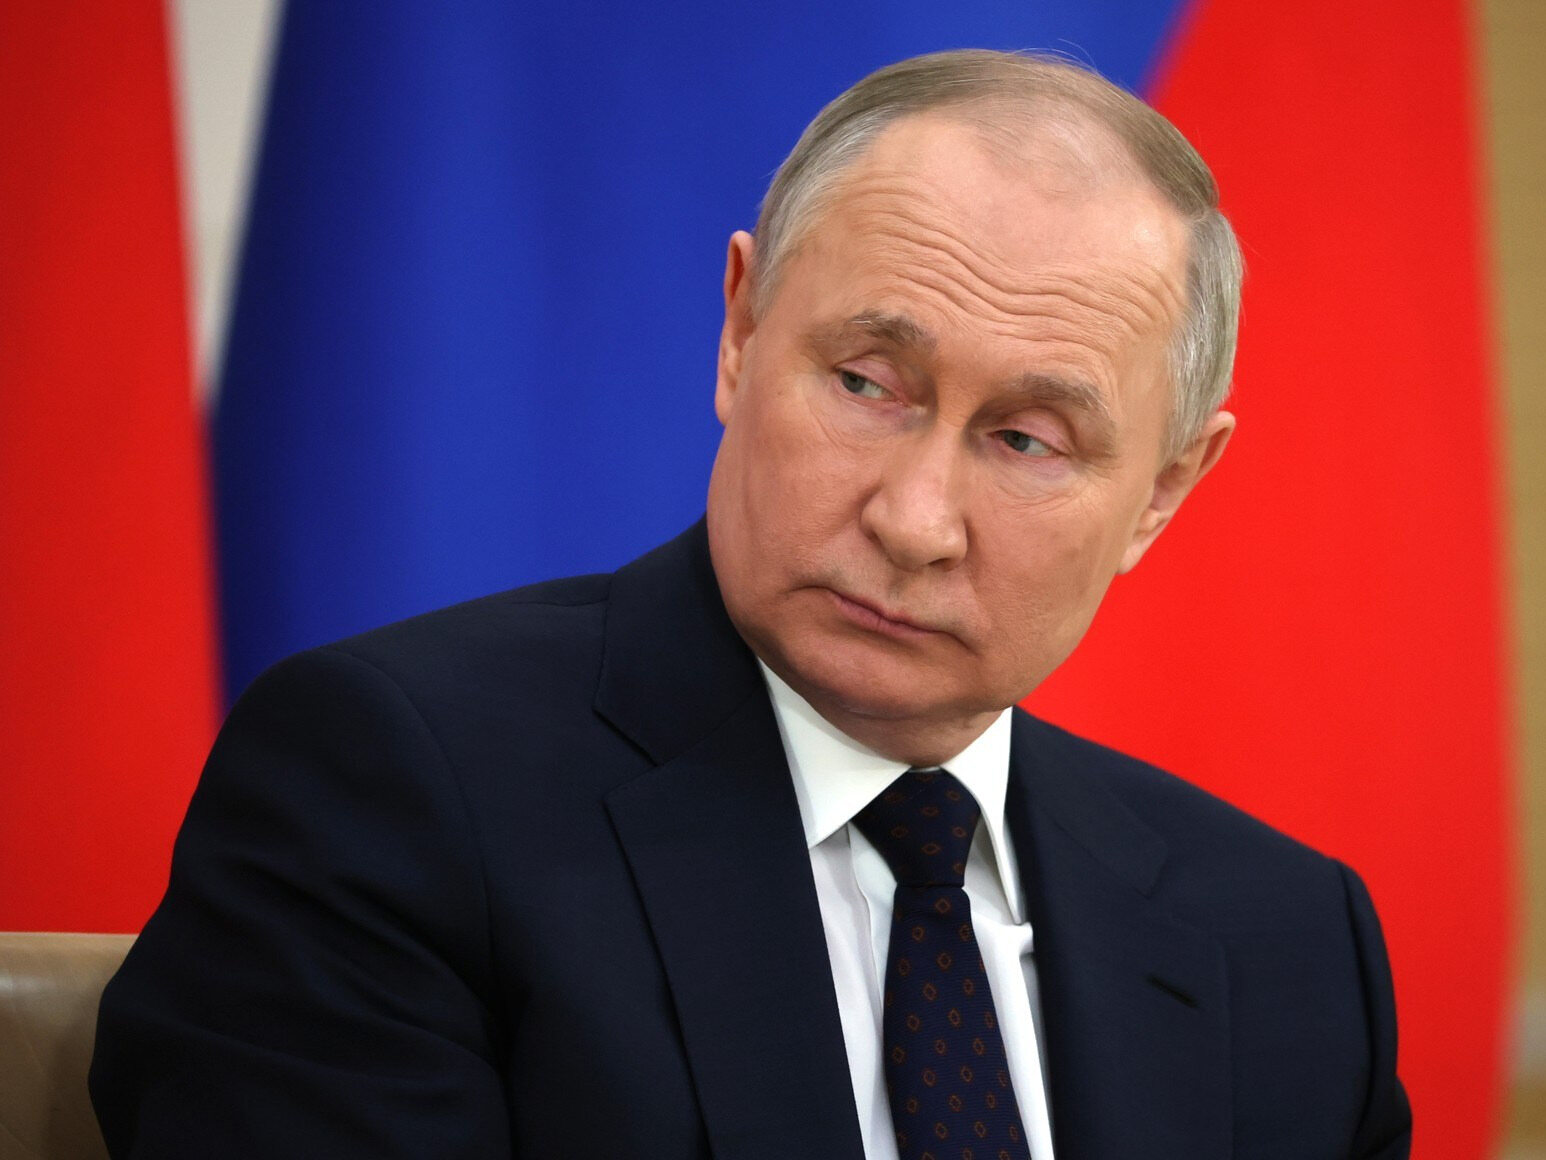 Moskwa przygotowuje się działań wojennych. Kreml wysyła niepokojące sygnały